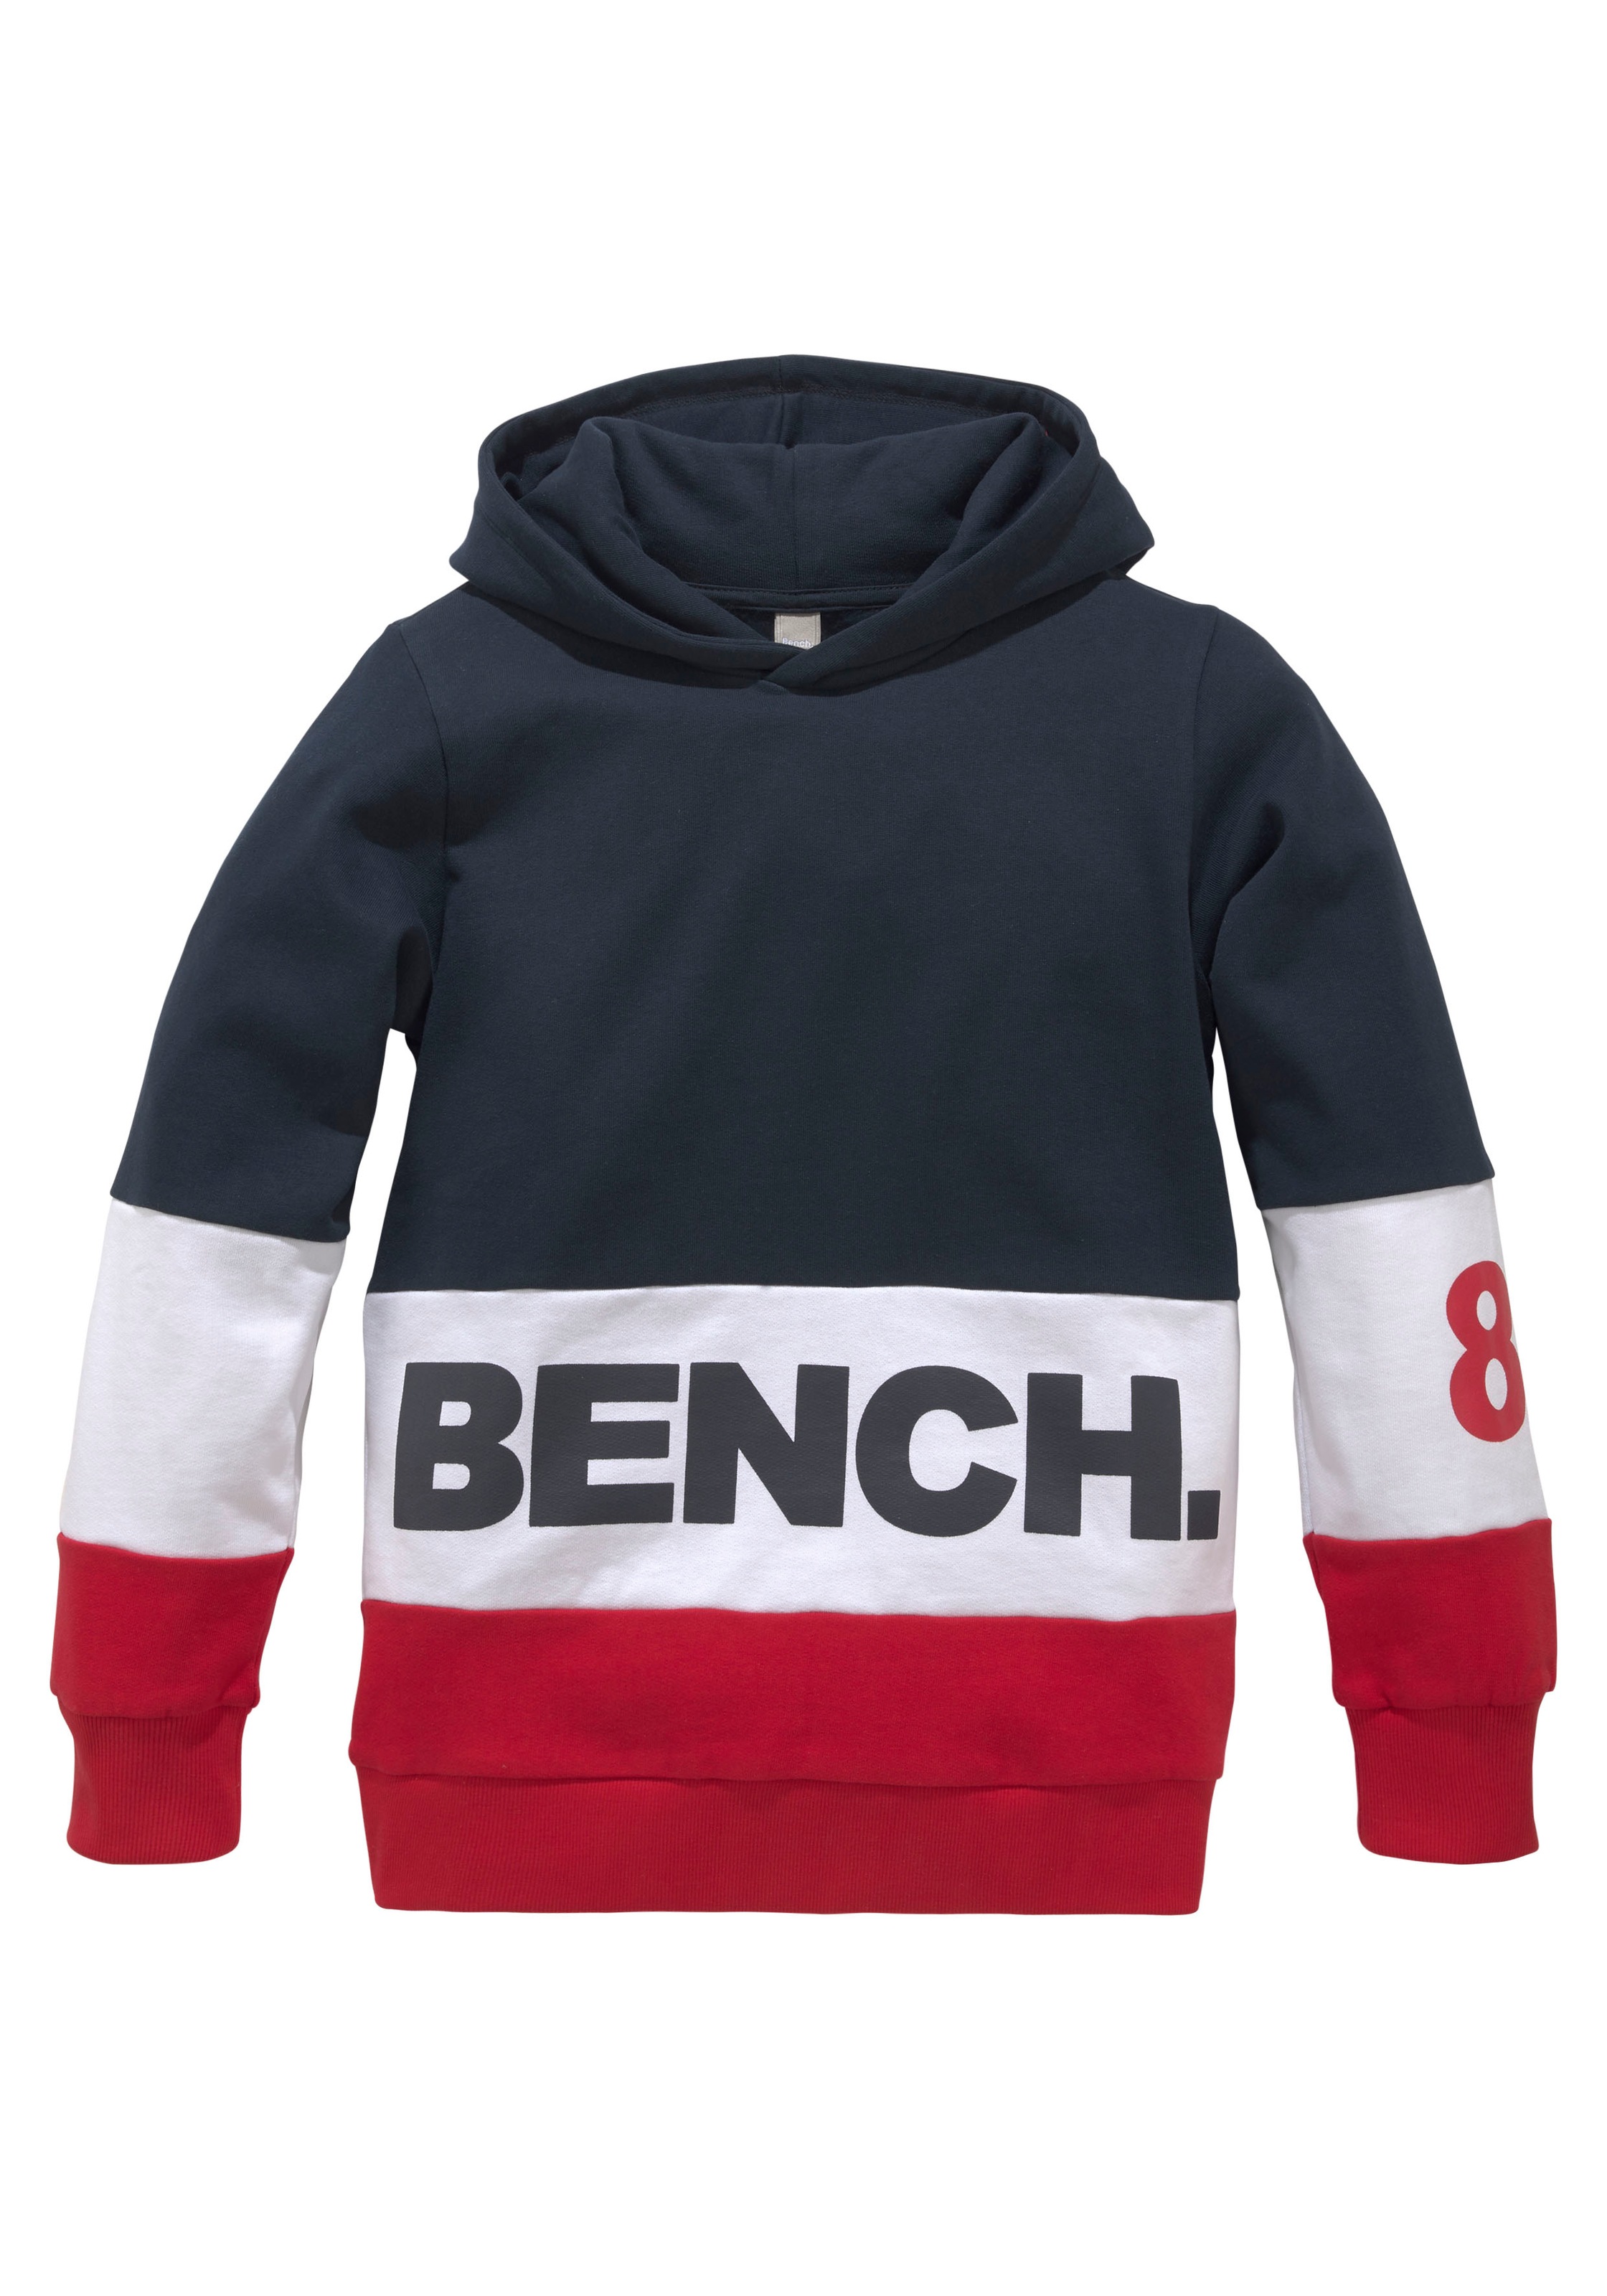 Bench. Kapuzensweatshirt, im im Online-Shop kaufen Design colourblocking